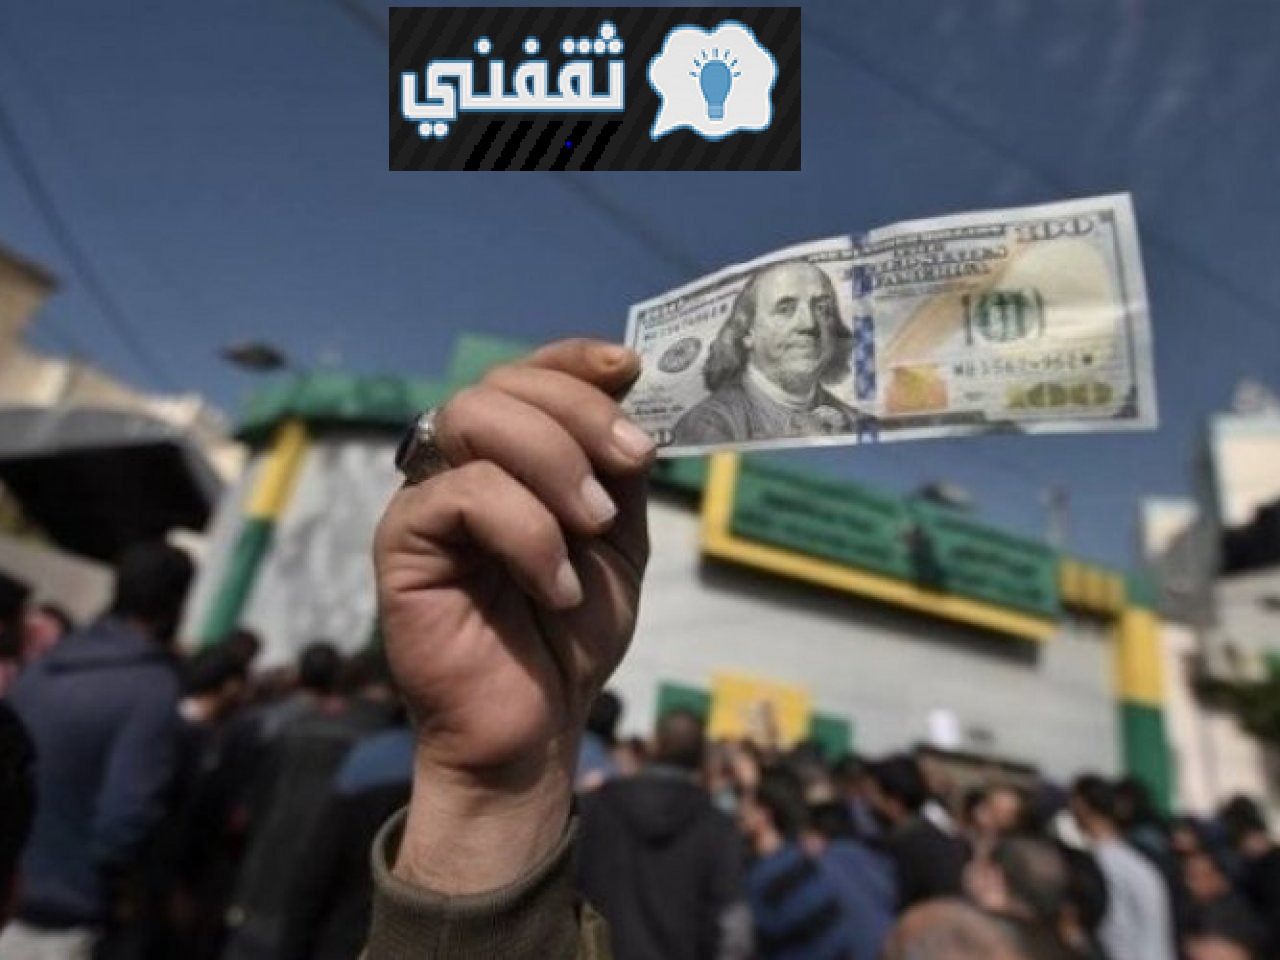 التسليم الآن وصرف المنحة القطرية 100 دولار لسكاني قطاع غزة ورابط الموقع